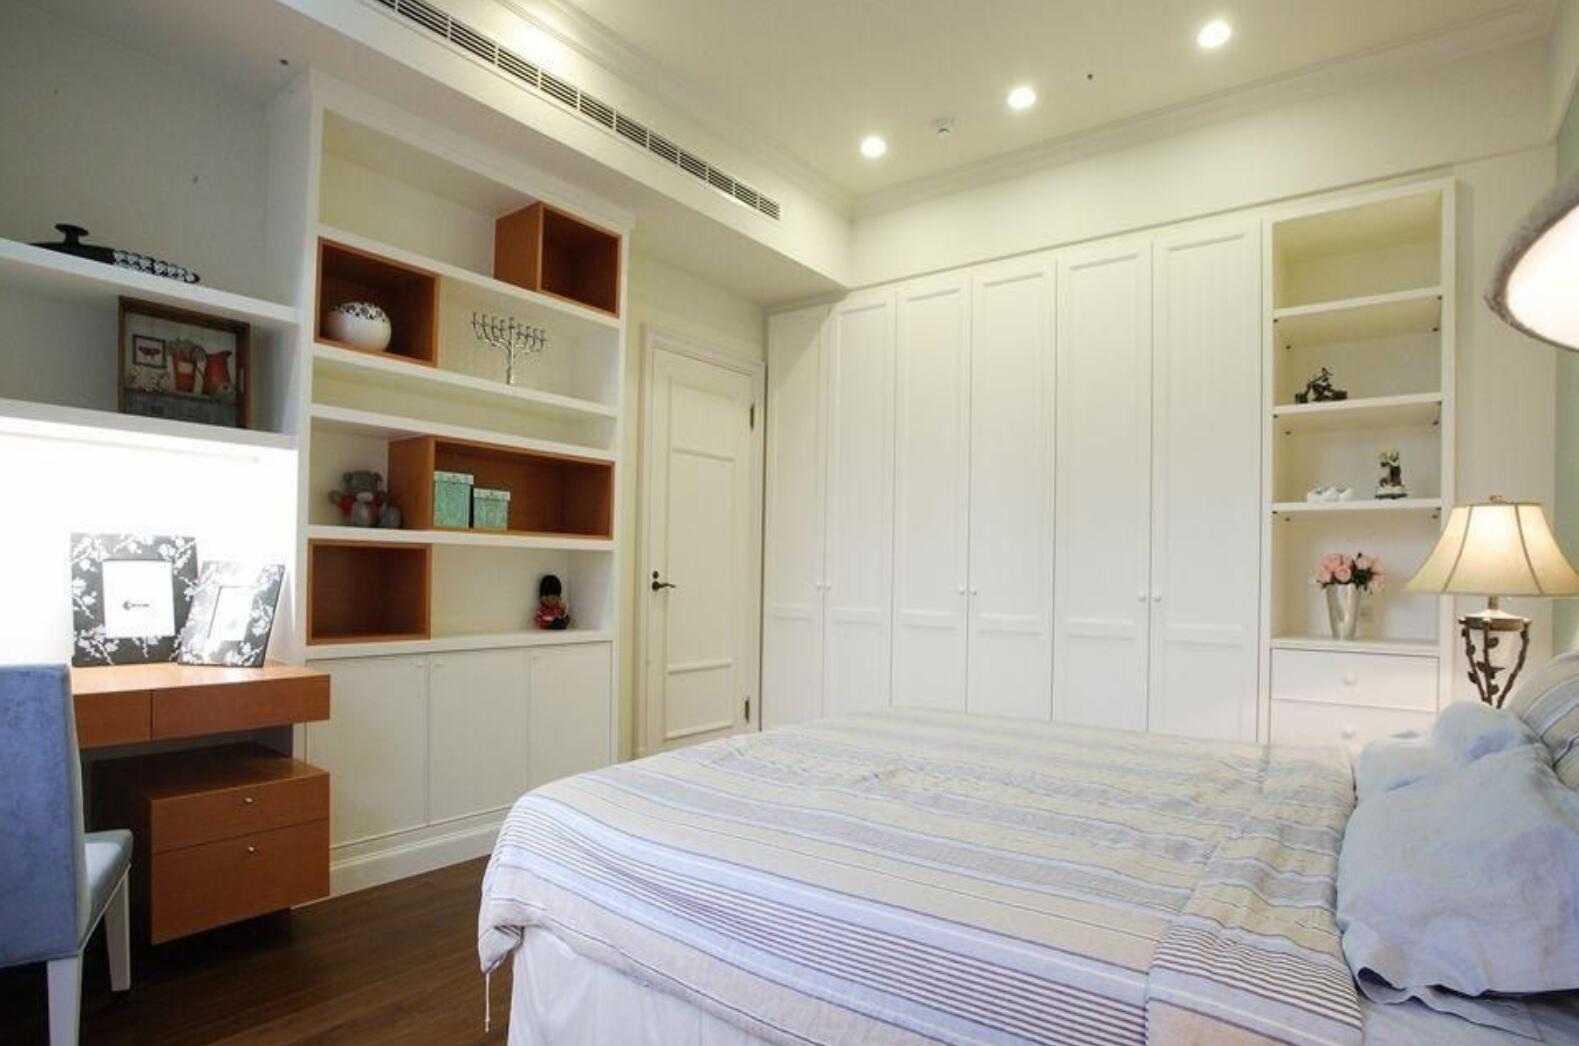 侧卧室怎么装修设计比较好看呢？1